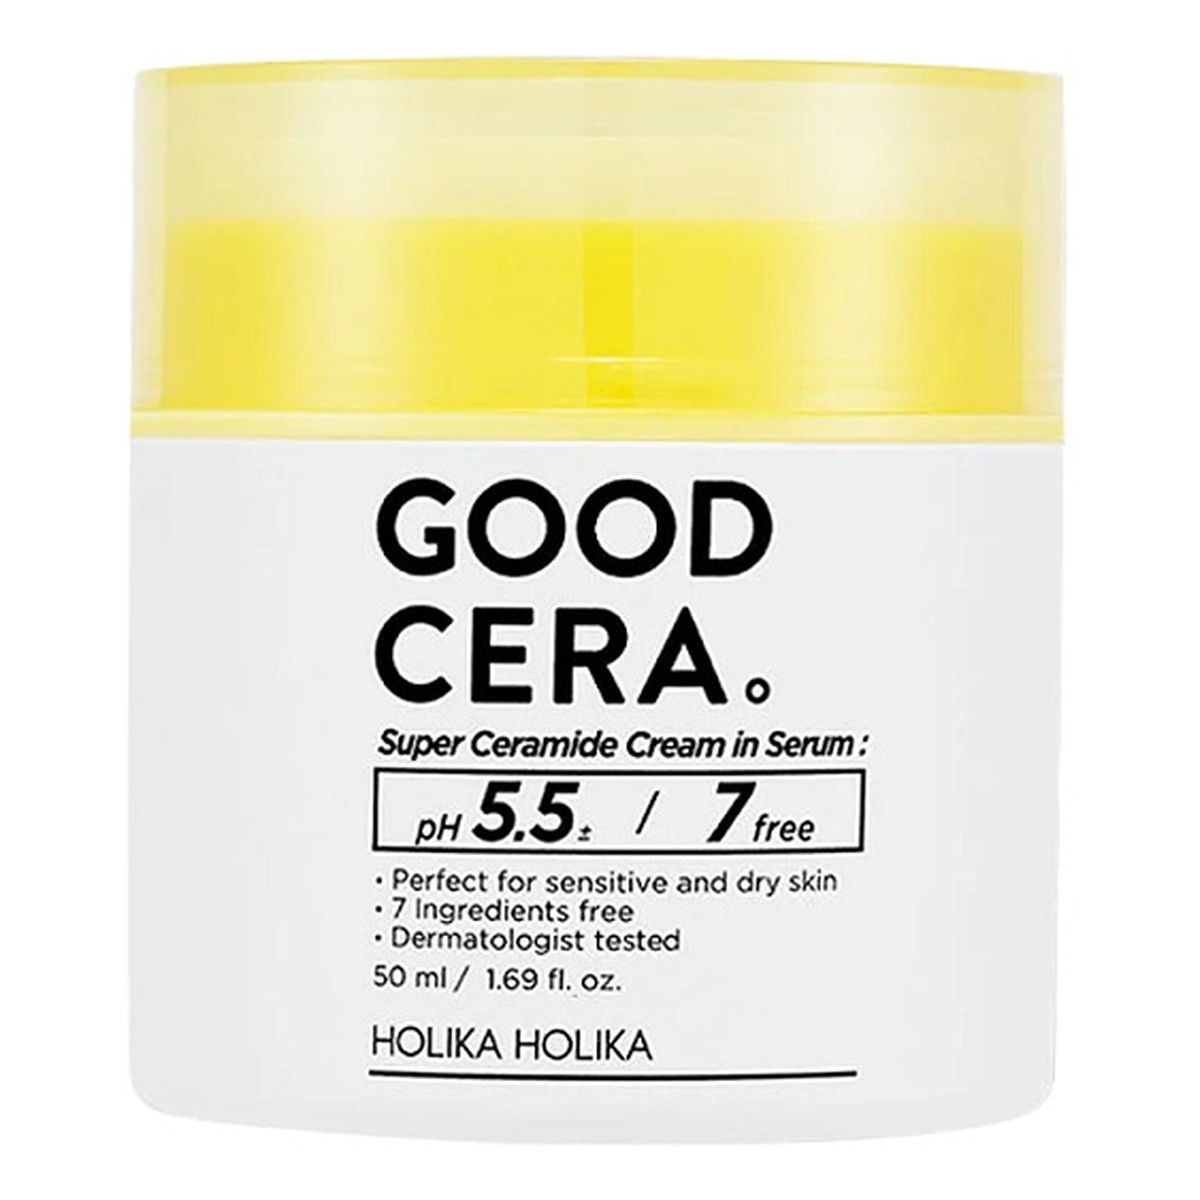 Holika Holika Good Cera Super Ceramide Cream in Serum nawilżający krem w serum do cery suchej i wrażliwej 50ml